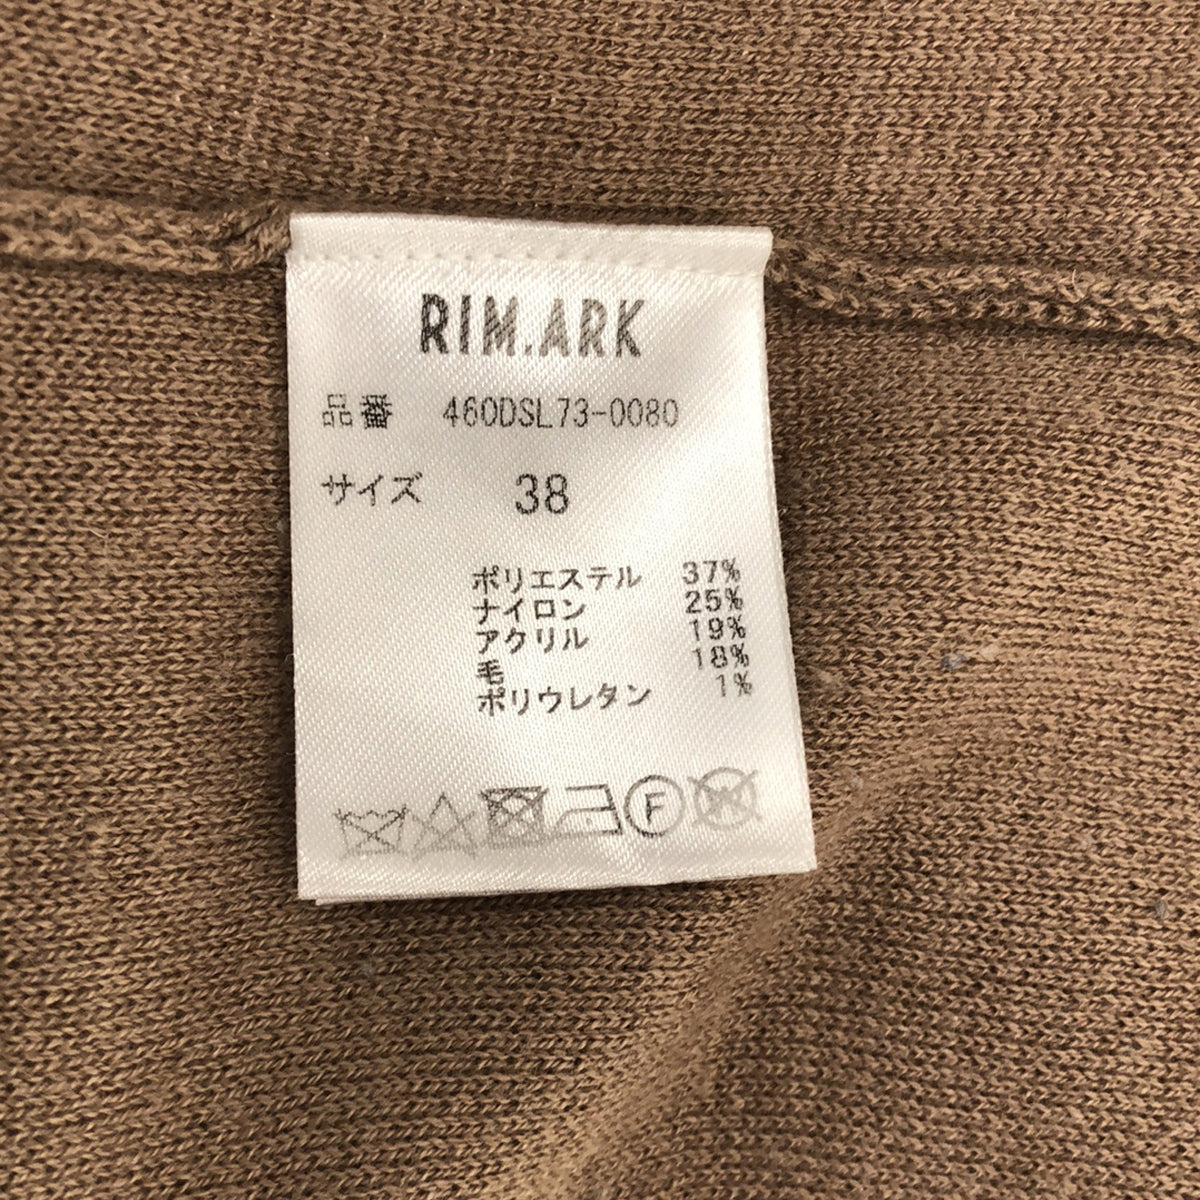 RIM.ARK / リムアーク | Raglan sleeve knit OP タートルネック ラグランスリーブ ニットワンピース | 38 | レディース